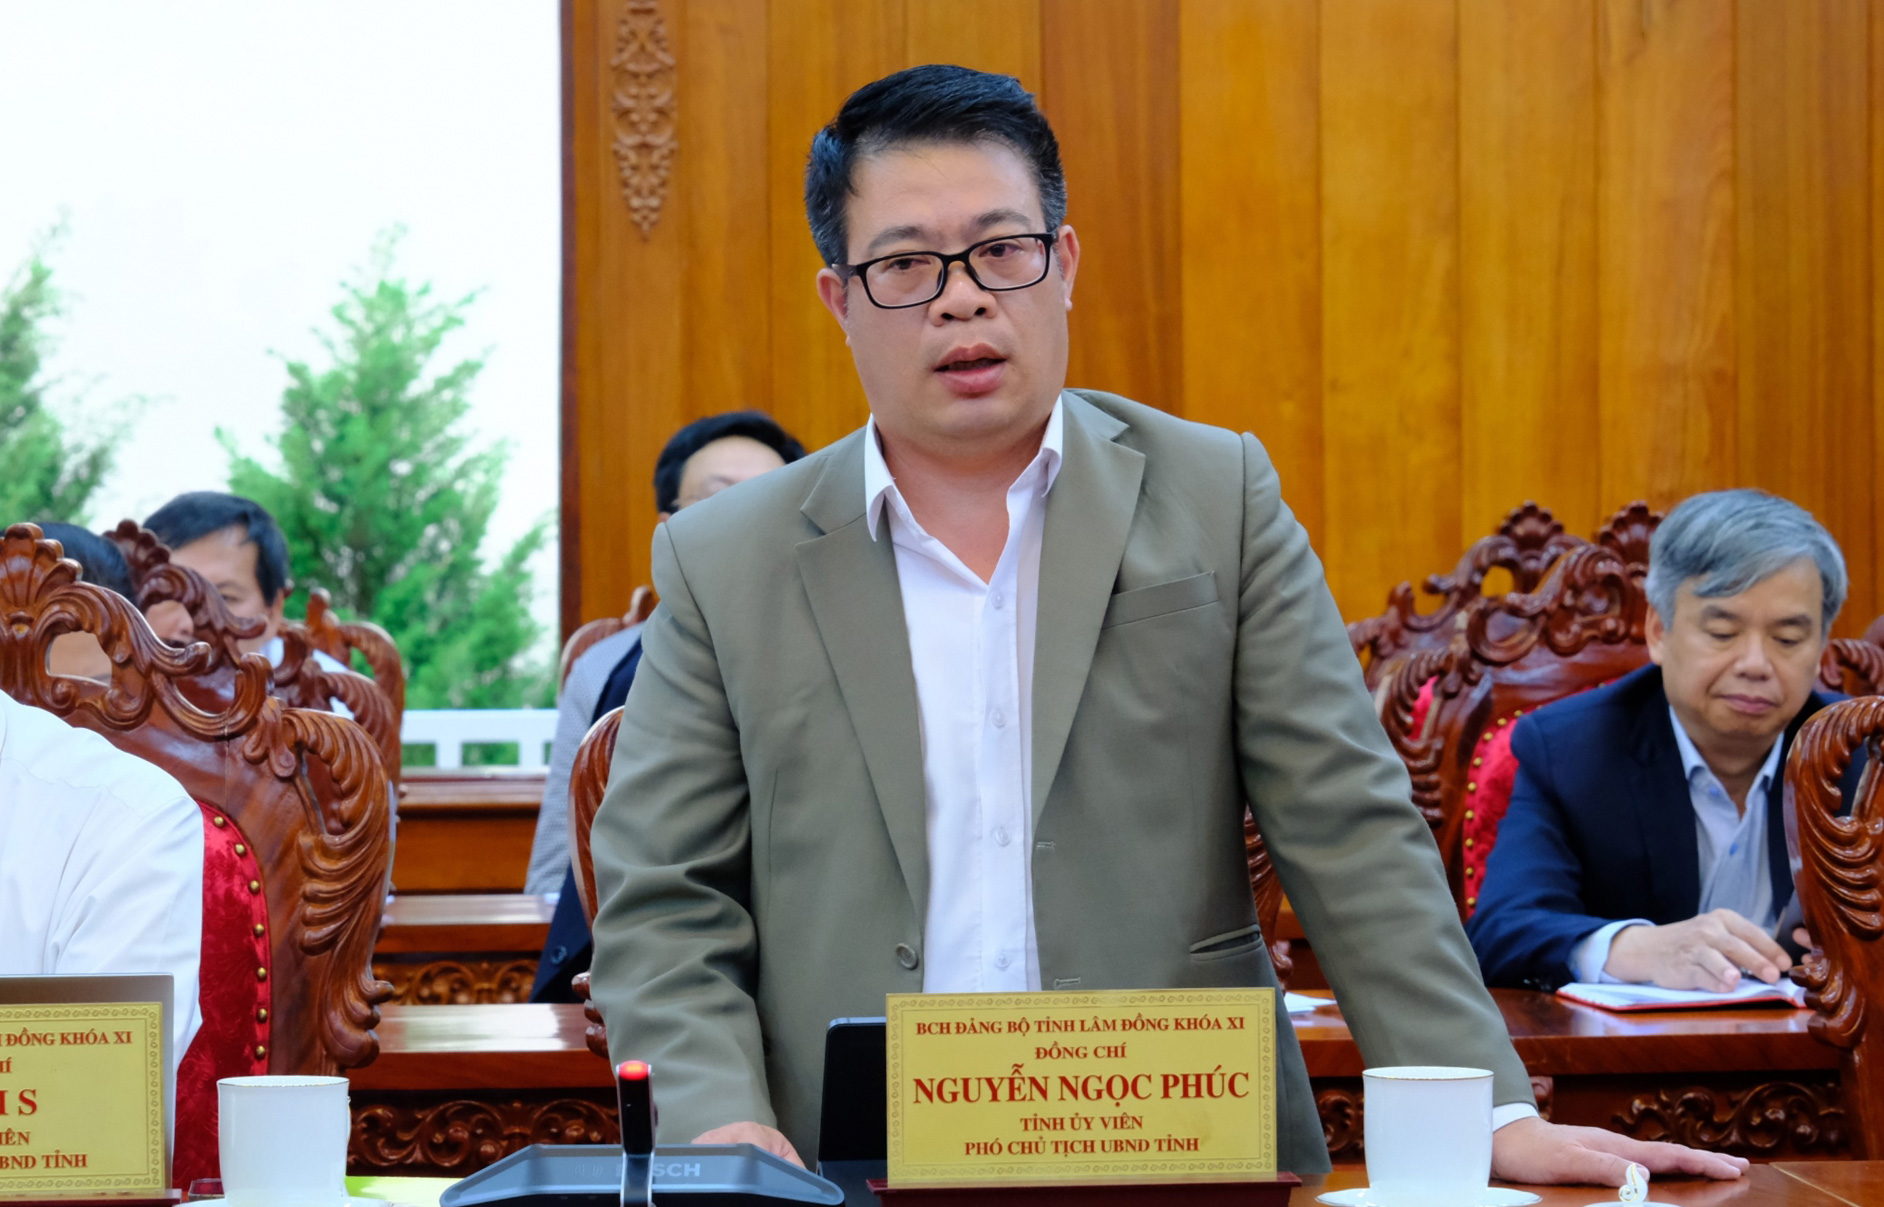 Phó Chủ tịch UBND tỉnh Nguyễn Ngọc Phúc phát biểu tại Hội nghị